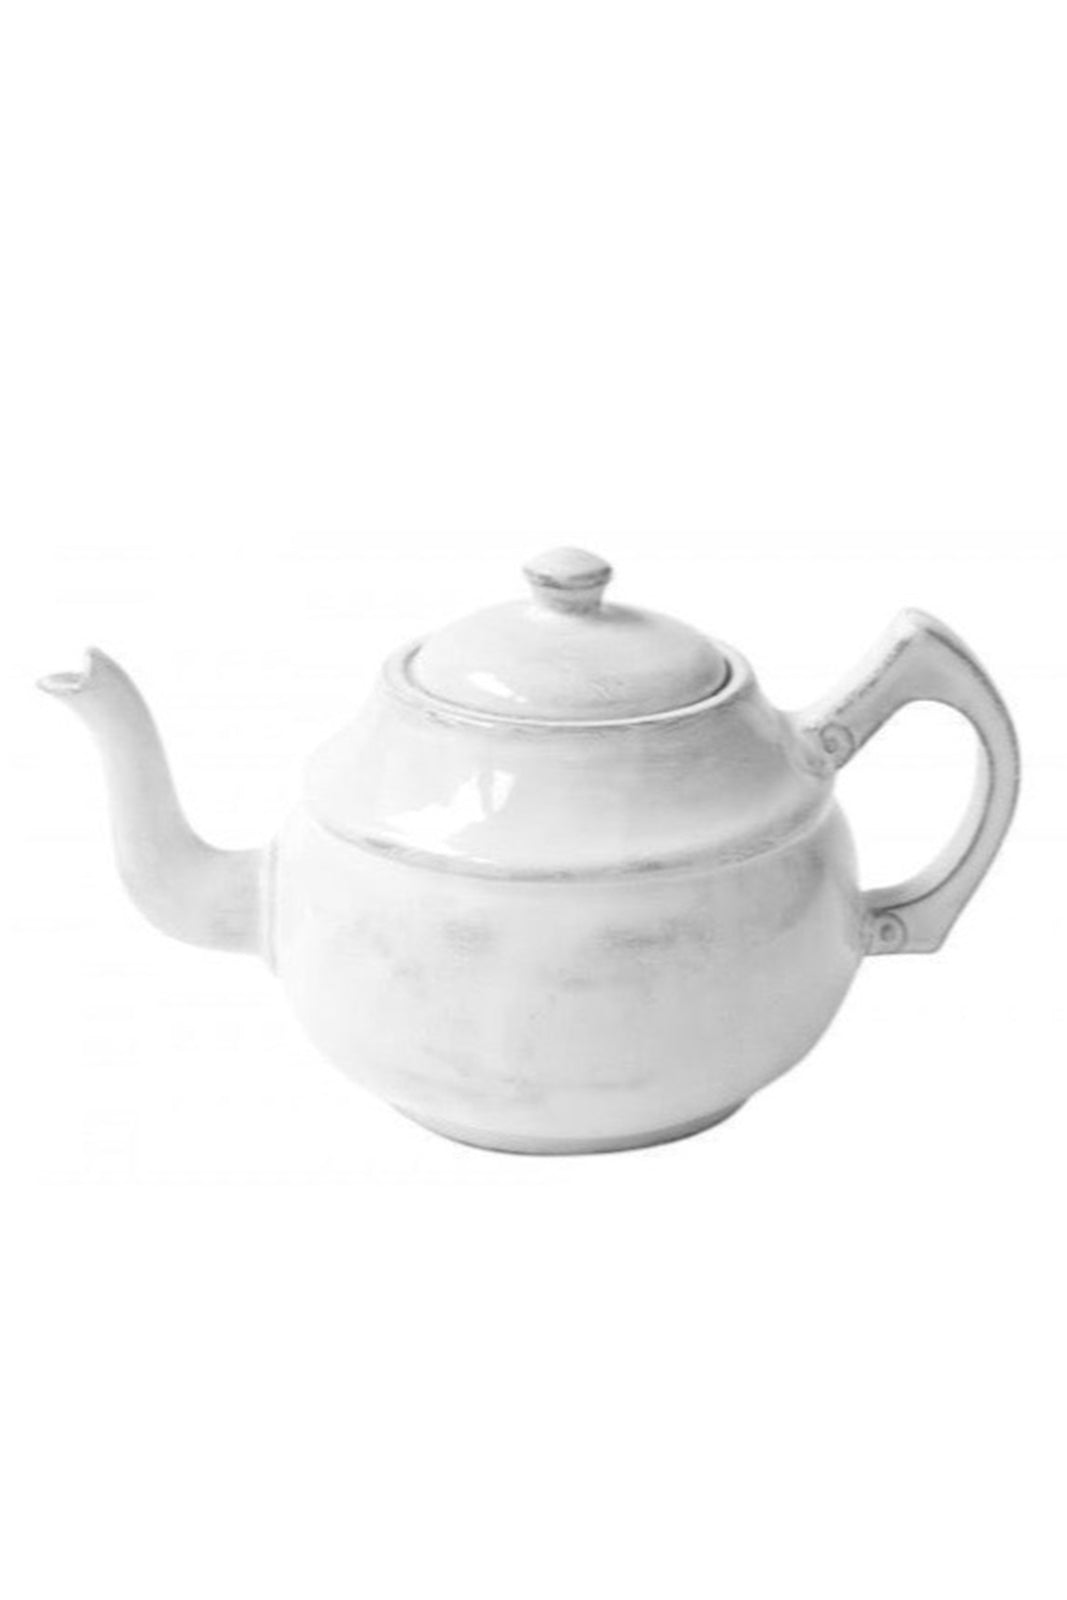 Rivet Teapot